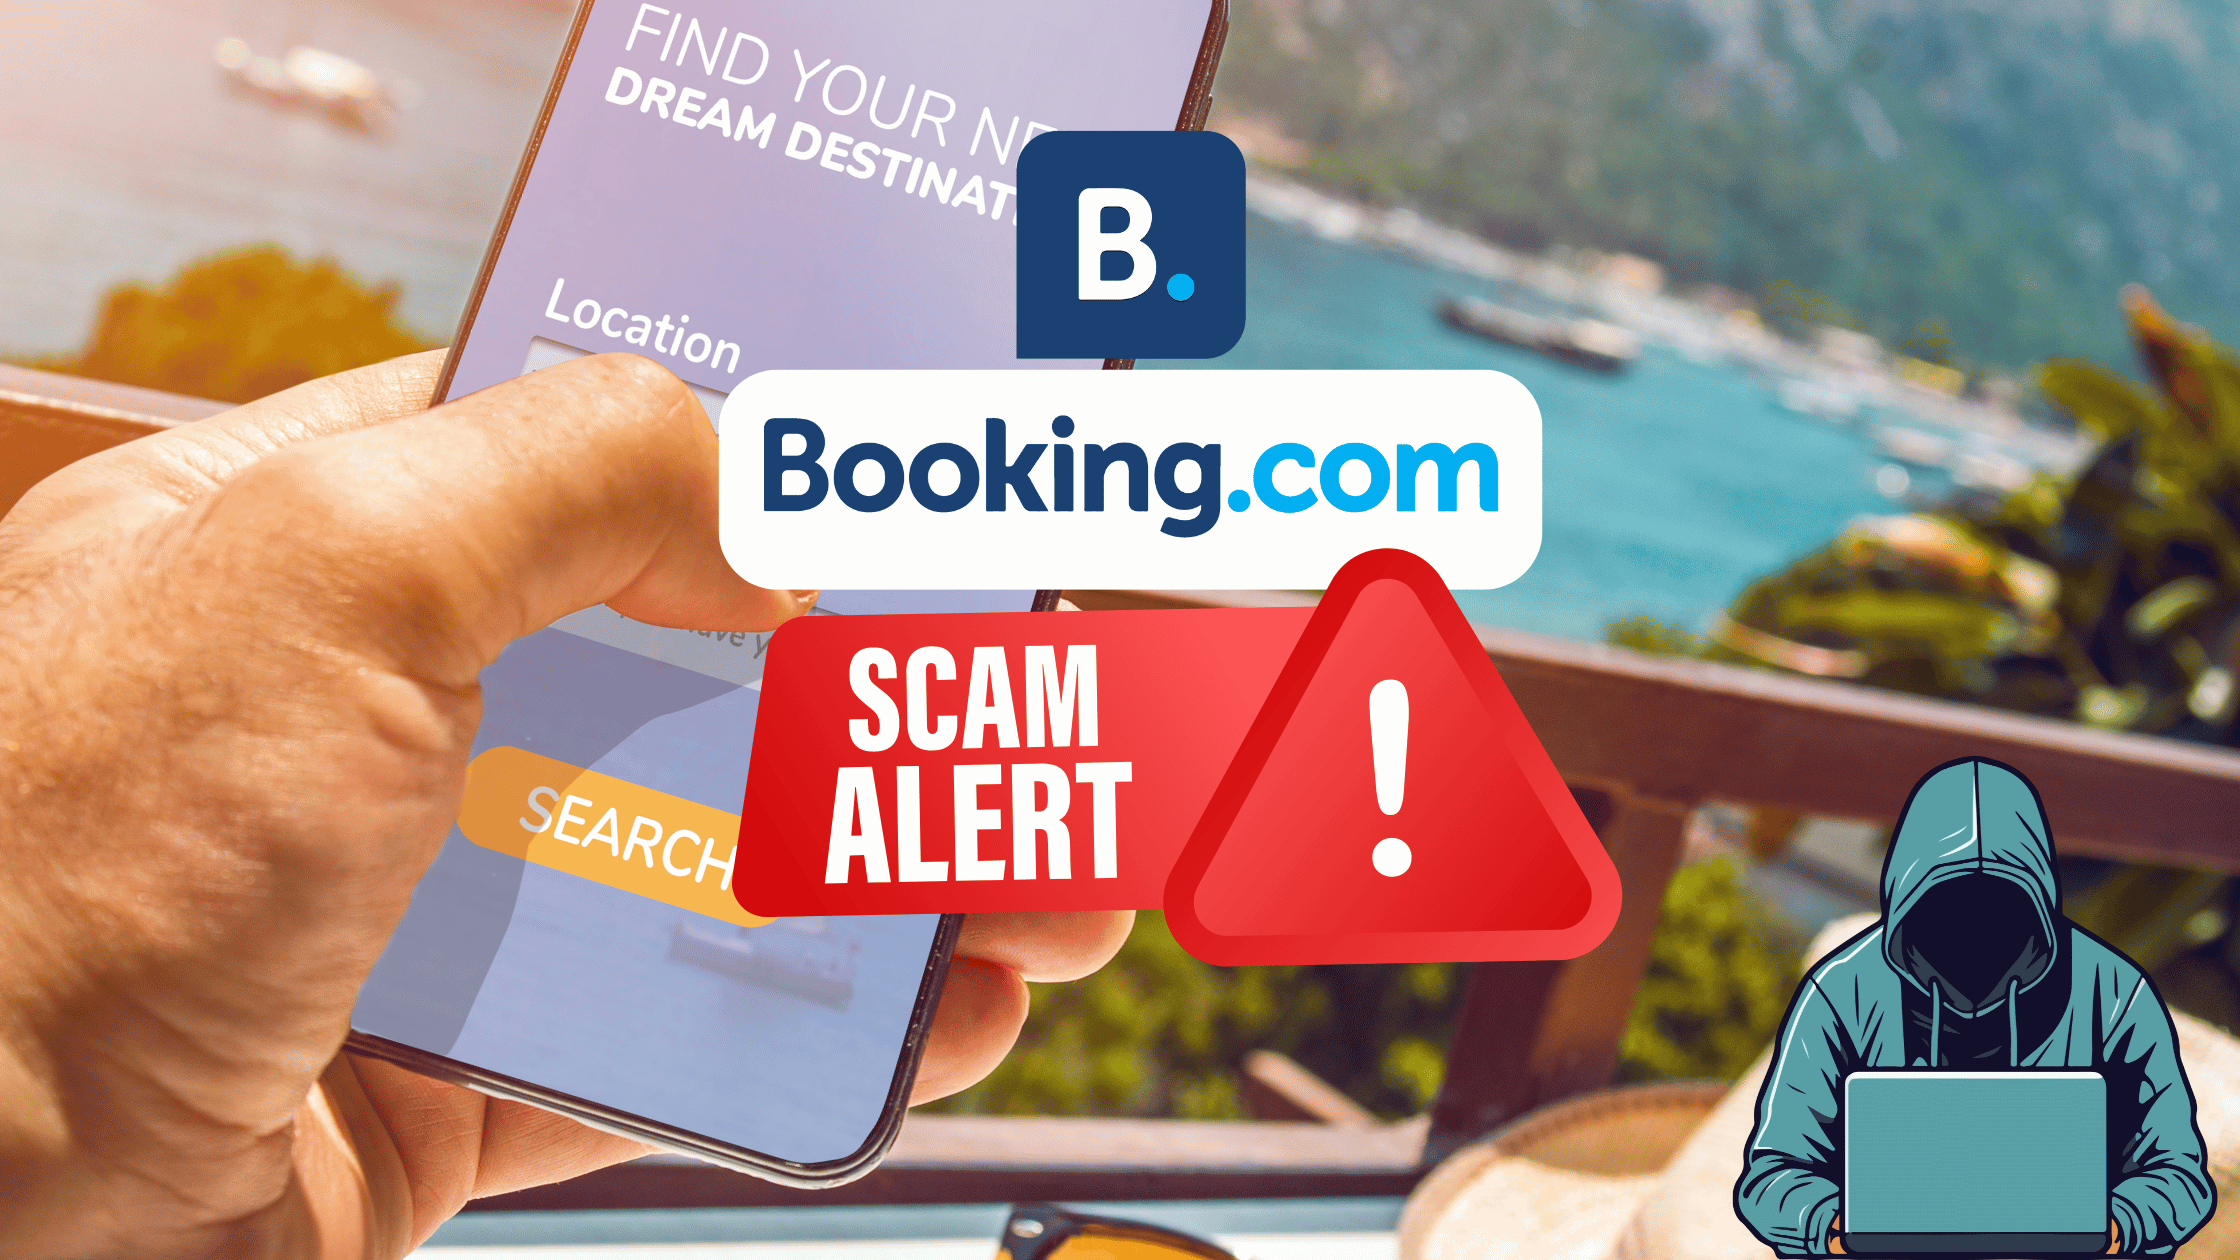 Booking.com Verification Link Scams